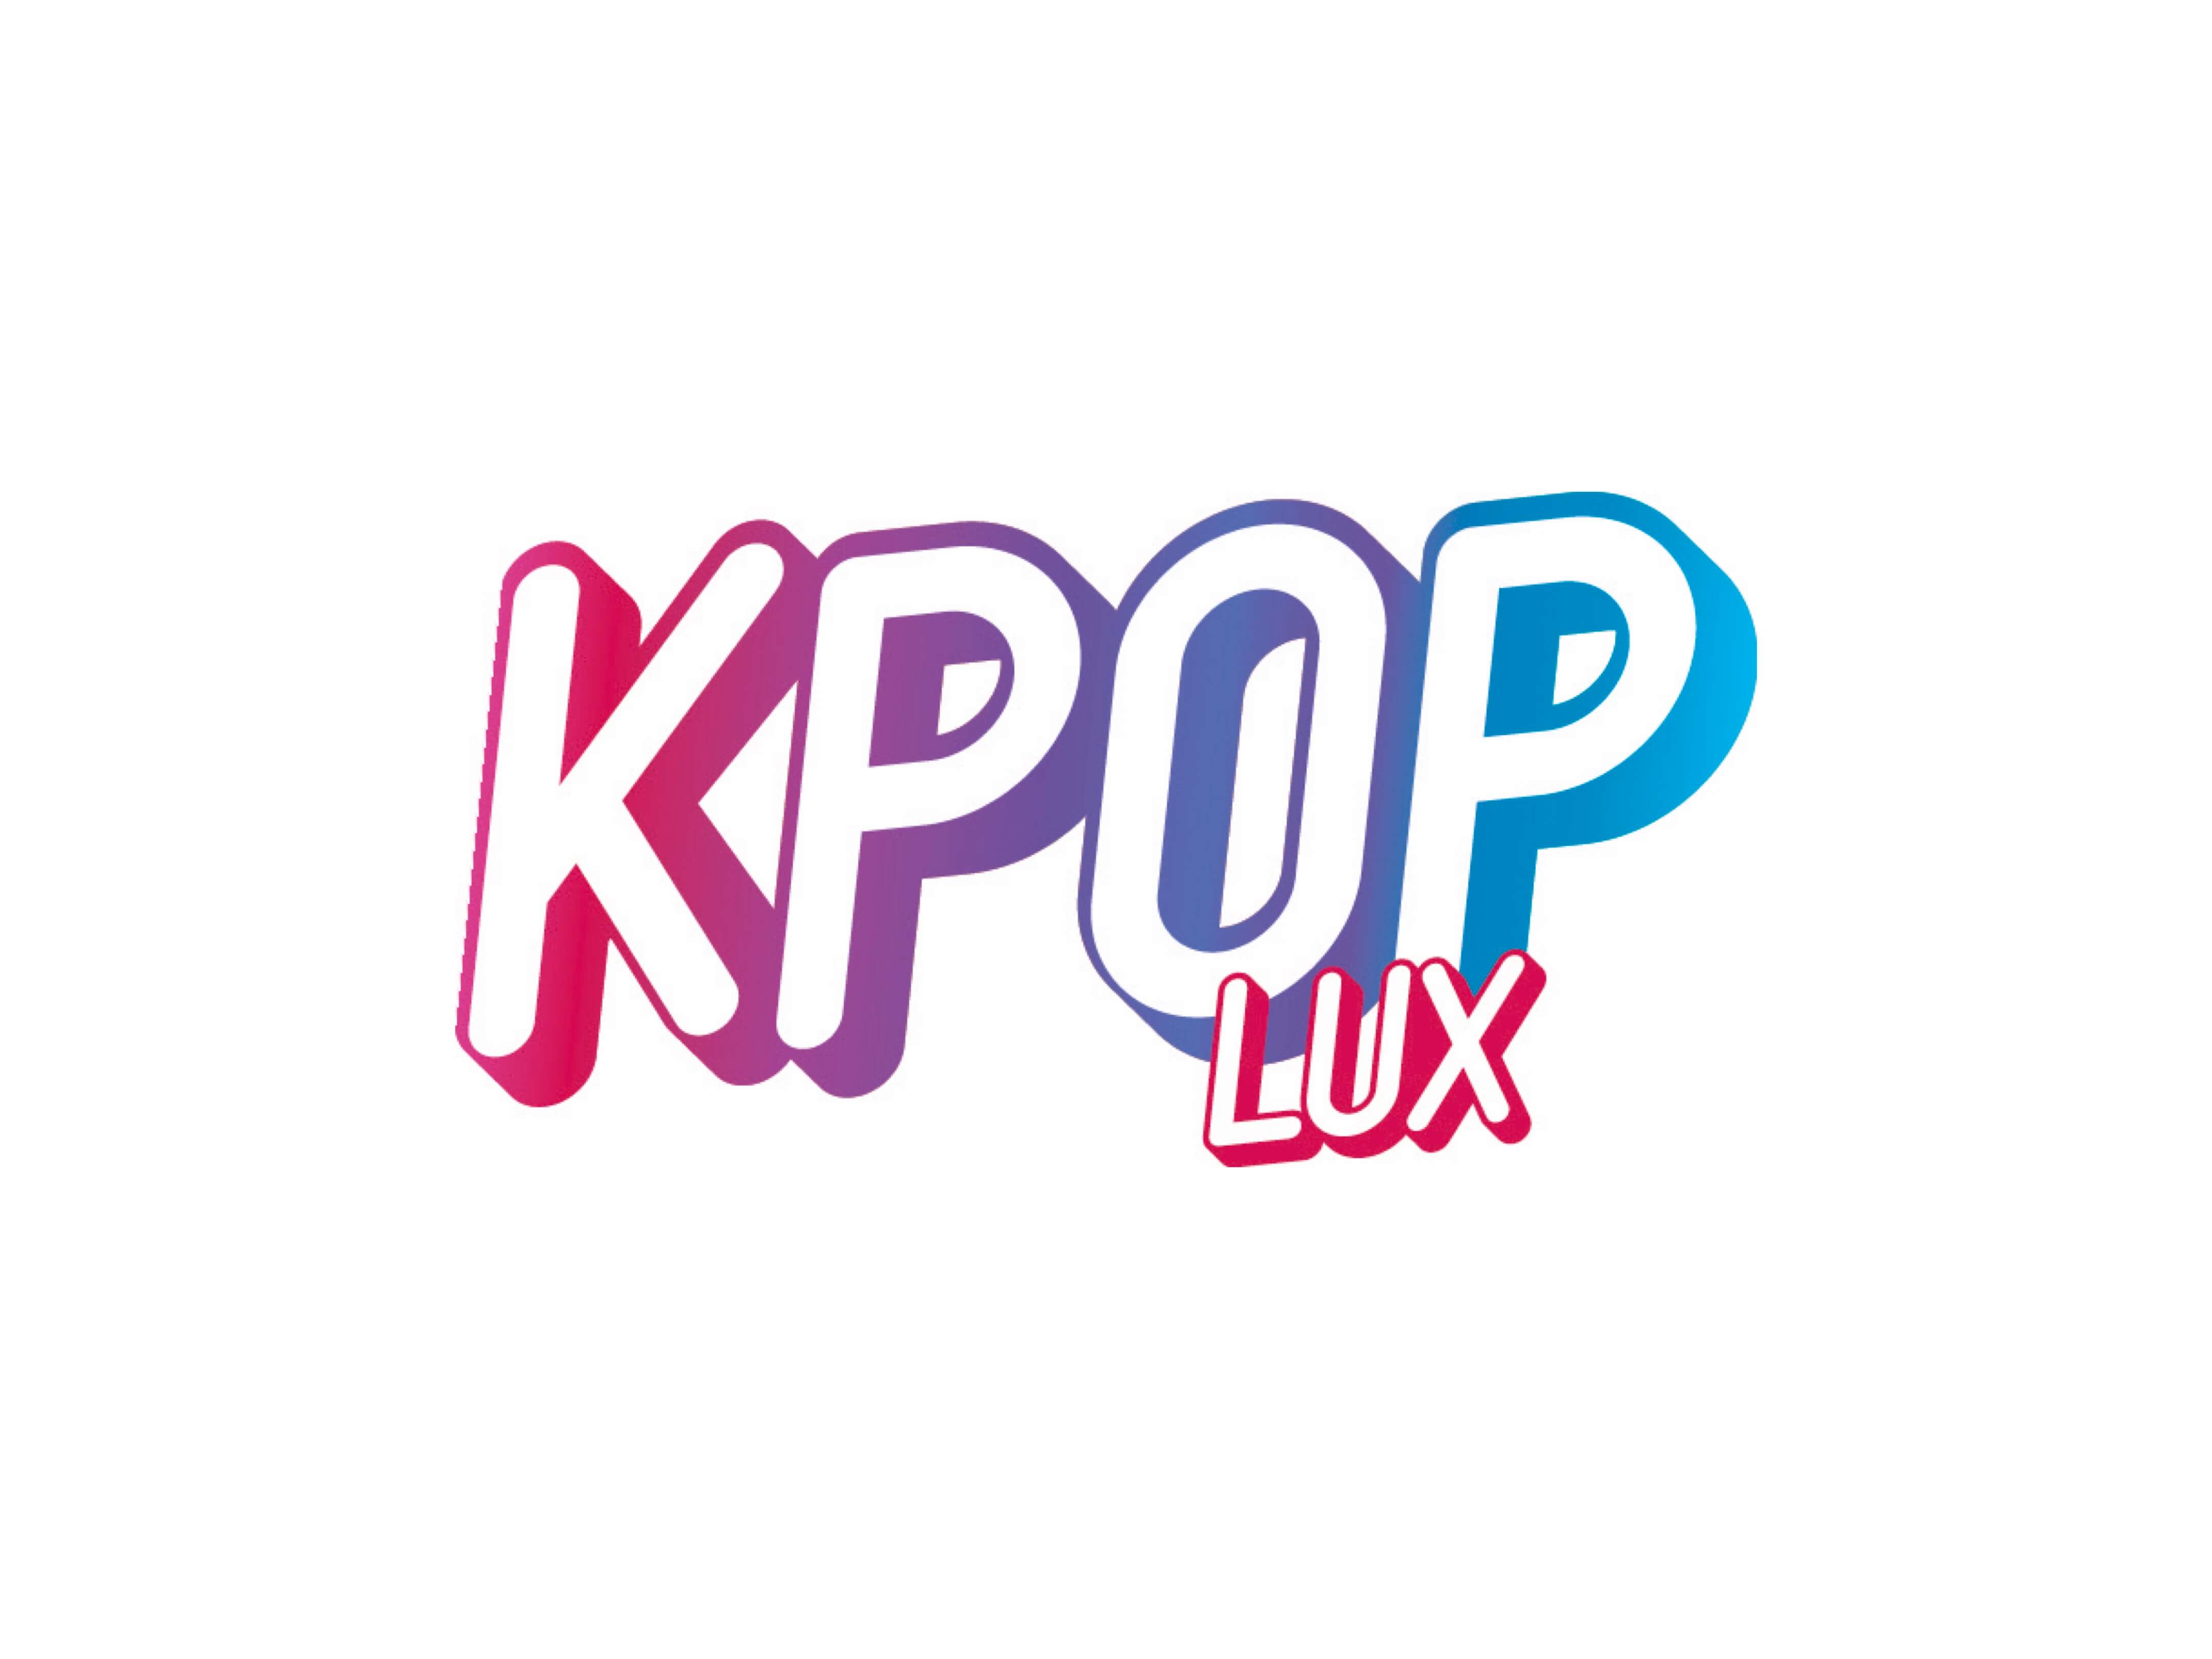 ヨーロッパ最大規模となるK-POPコンサート「K.FLEX」の 姉妹フェス「KPOP LUX」の日本国内興業権を取得。KPOP LUX Limitedとパートナーシップを締結し、日本国内での初開催に向けて始動